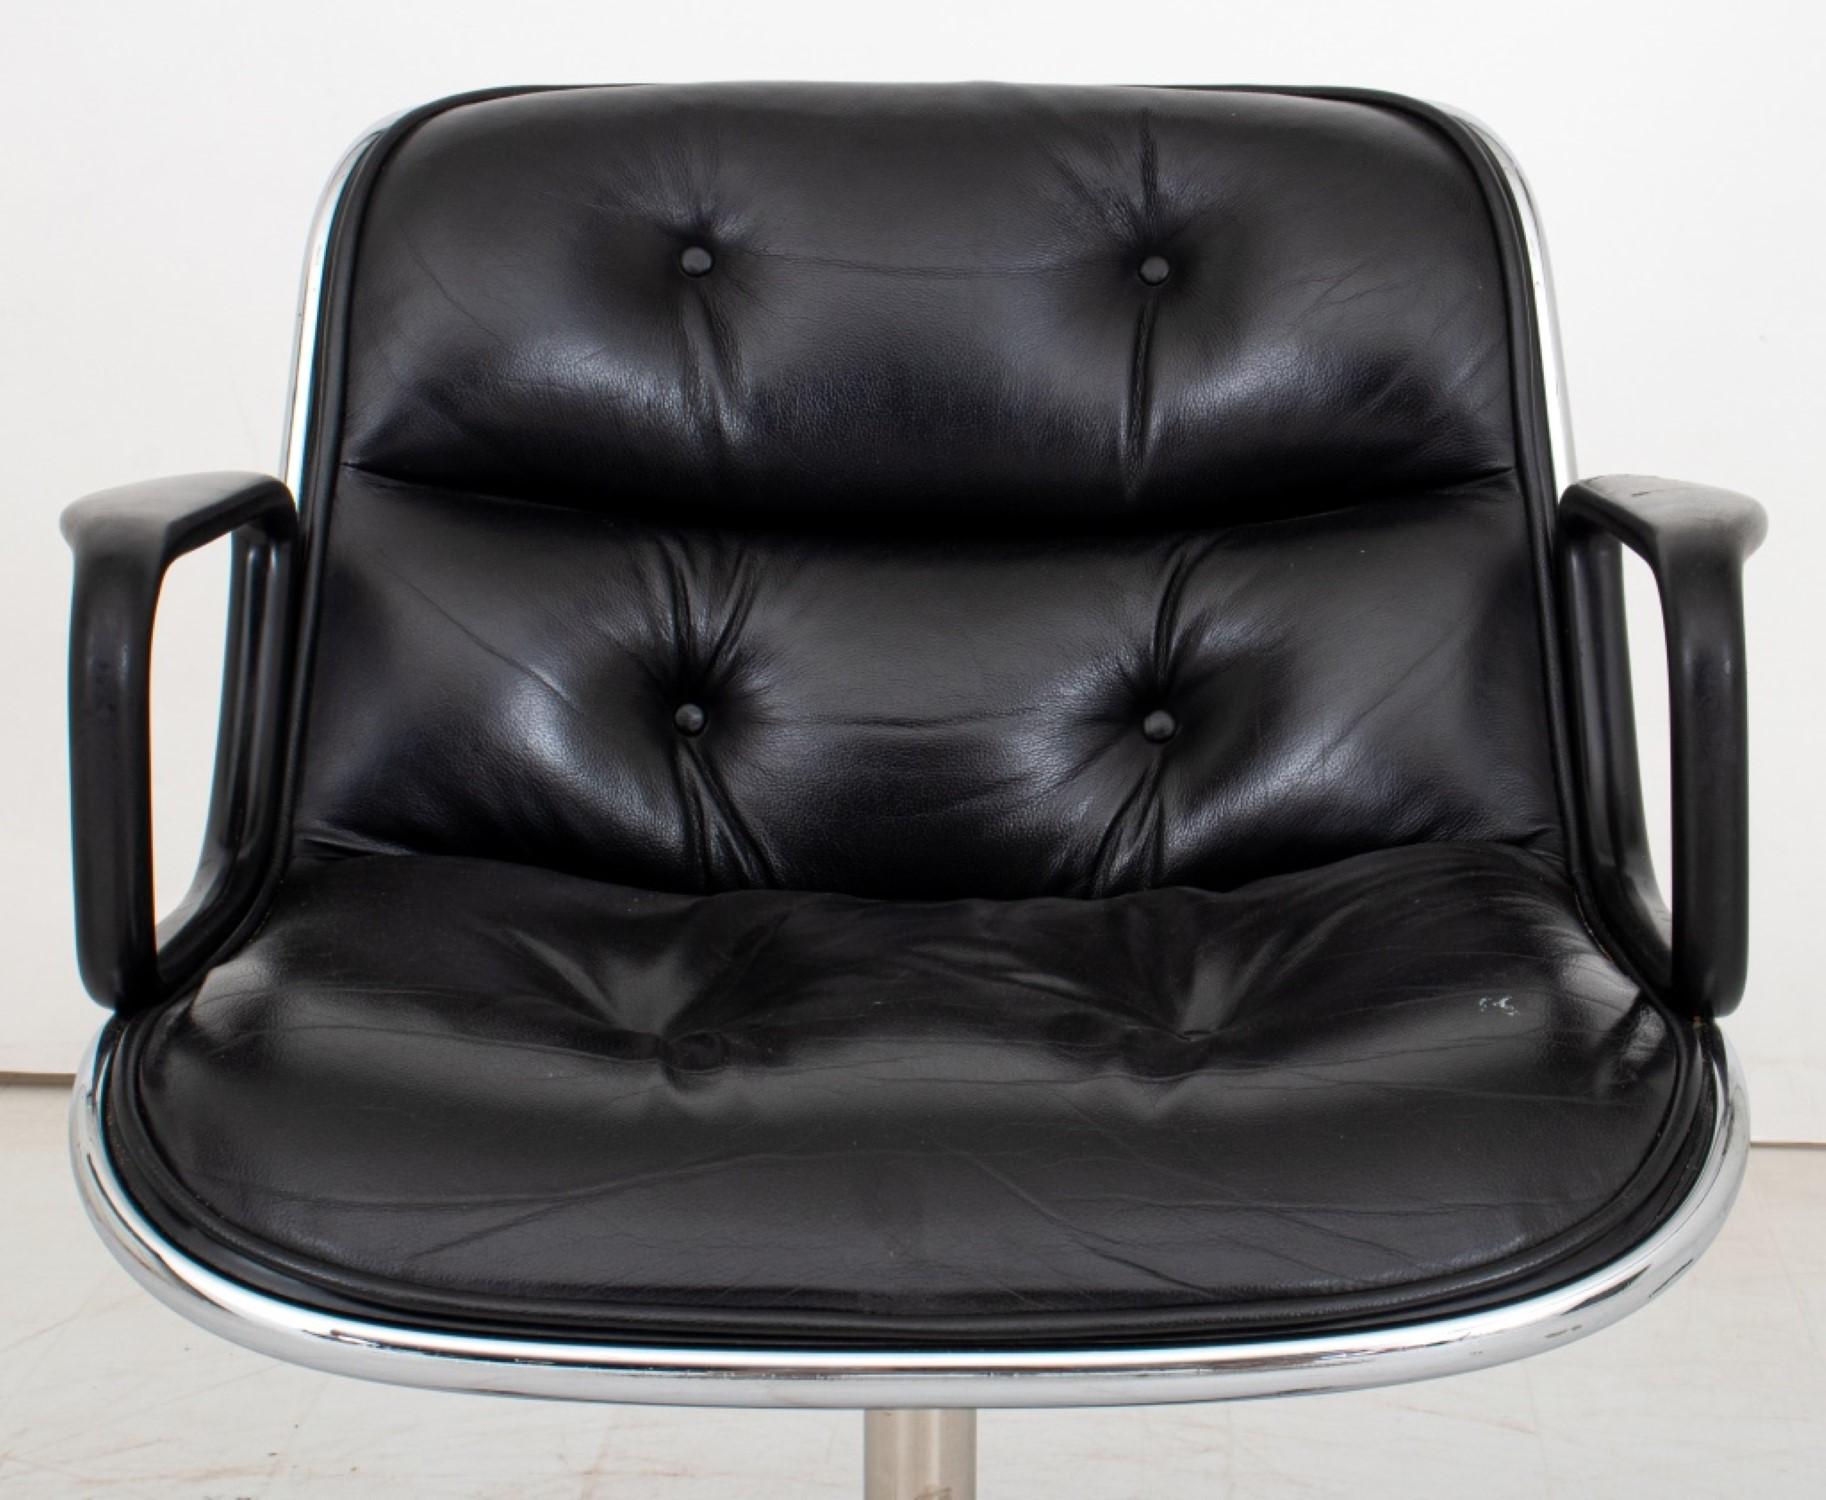 Chaise de bureau Charles Pollock pour Knoll International (1963)

Design/One : Assise et dossier en cuir noir boutonné sur une base chromée à quatre roulettes.

Dimensions : 32.25